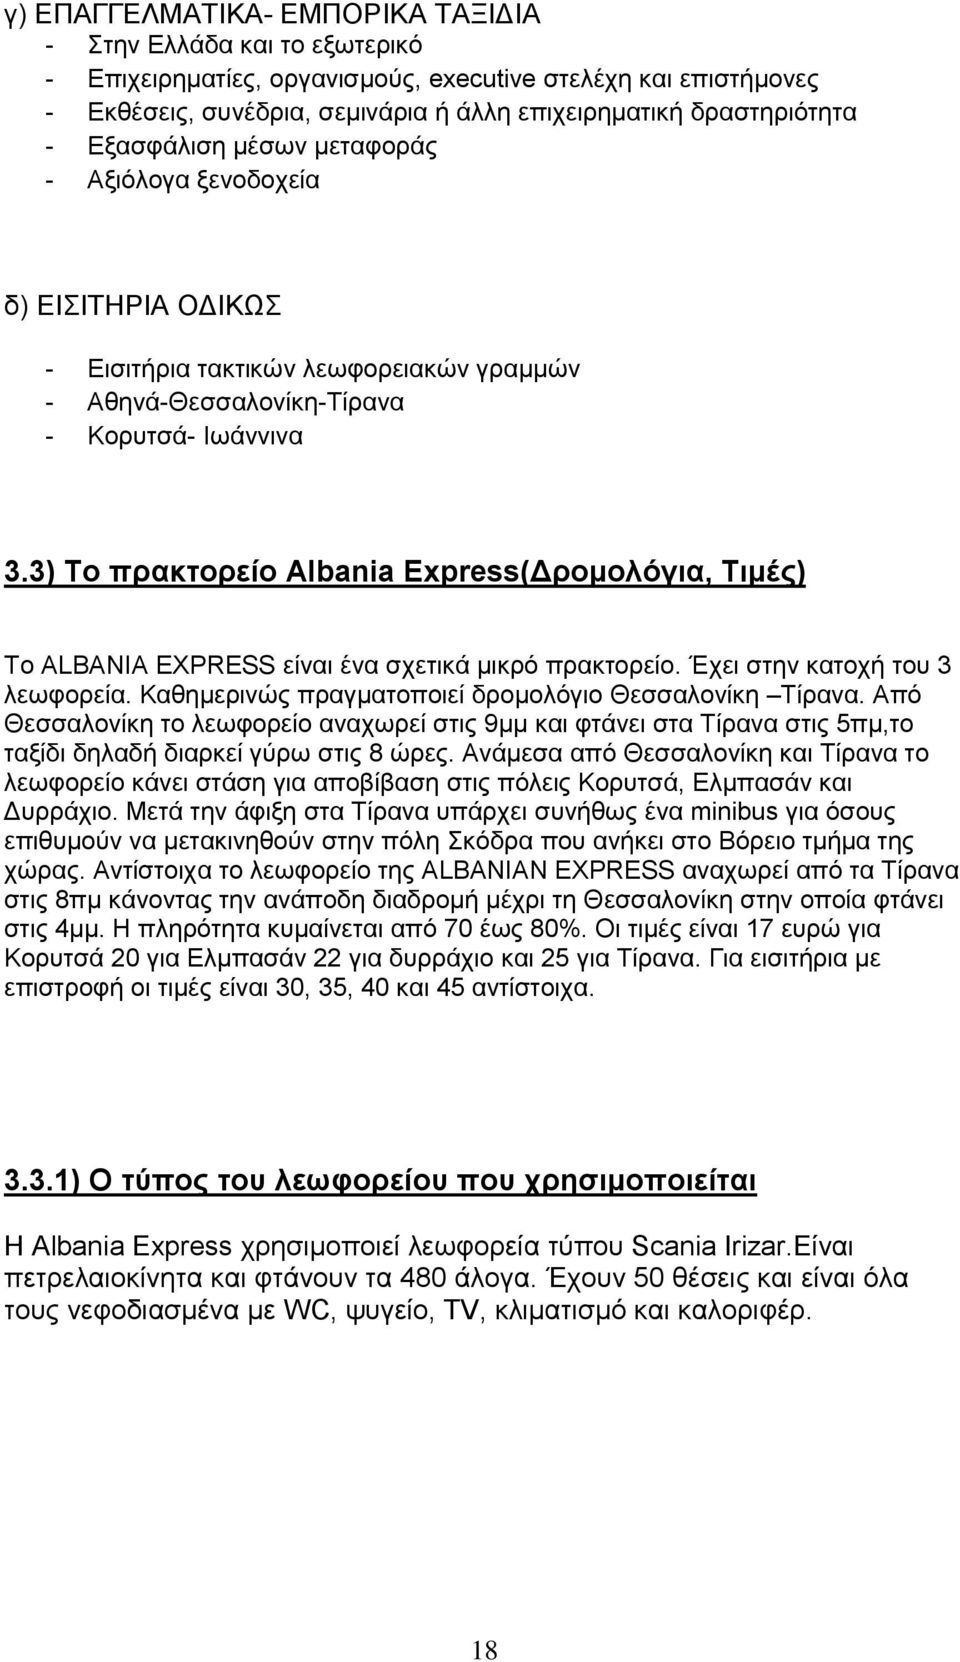 3) Σο πρακηορείο Albania Express(Γρομολόγια, Σιμές) Σν ALBANIA EXPRESS είλαη έλα ζρεηηθά κηθξφ πξαθηνξείν. Έρεη ζηελ θαηνρή ηνπ 3 ιεσθνξεία. Καζεκεξηλψο πξαγκαηνπνηεί δξνκνιφγην Θεζζαινλίθε Σίξαλα.